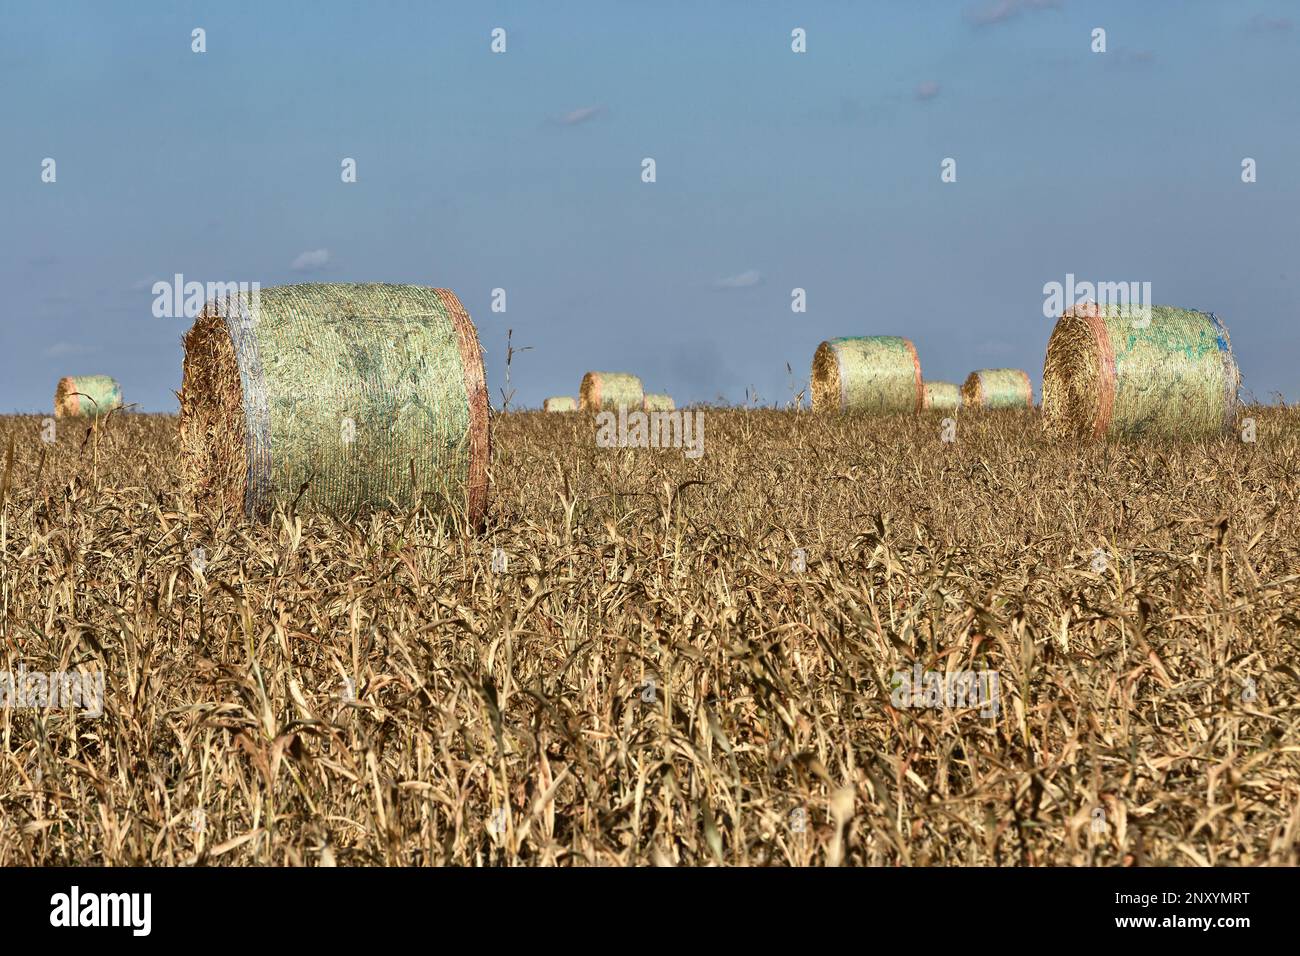 Futtersorghum, geerntete Ballen, WaKeeney, Kansas, Unted States. "Sorghum bicolor". Stockfoto